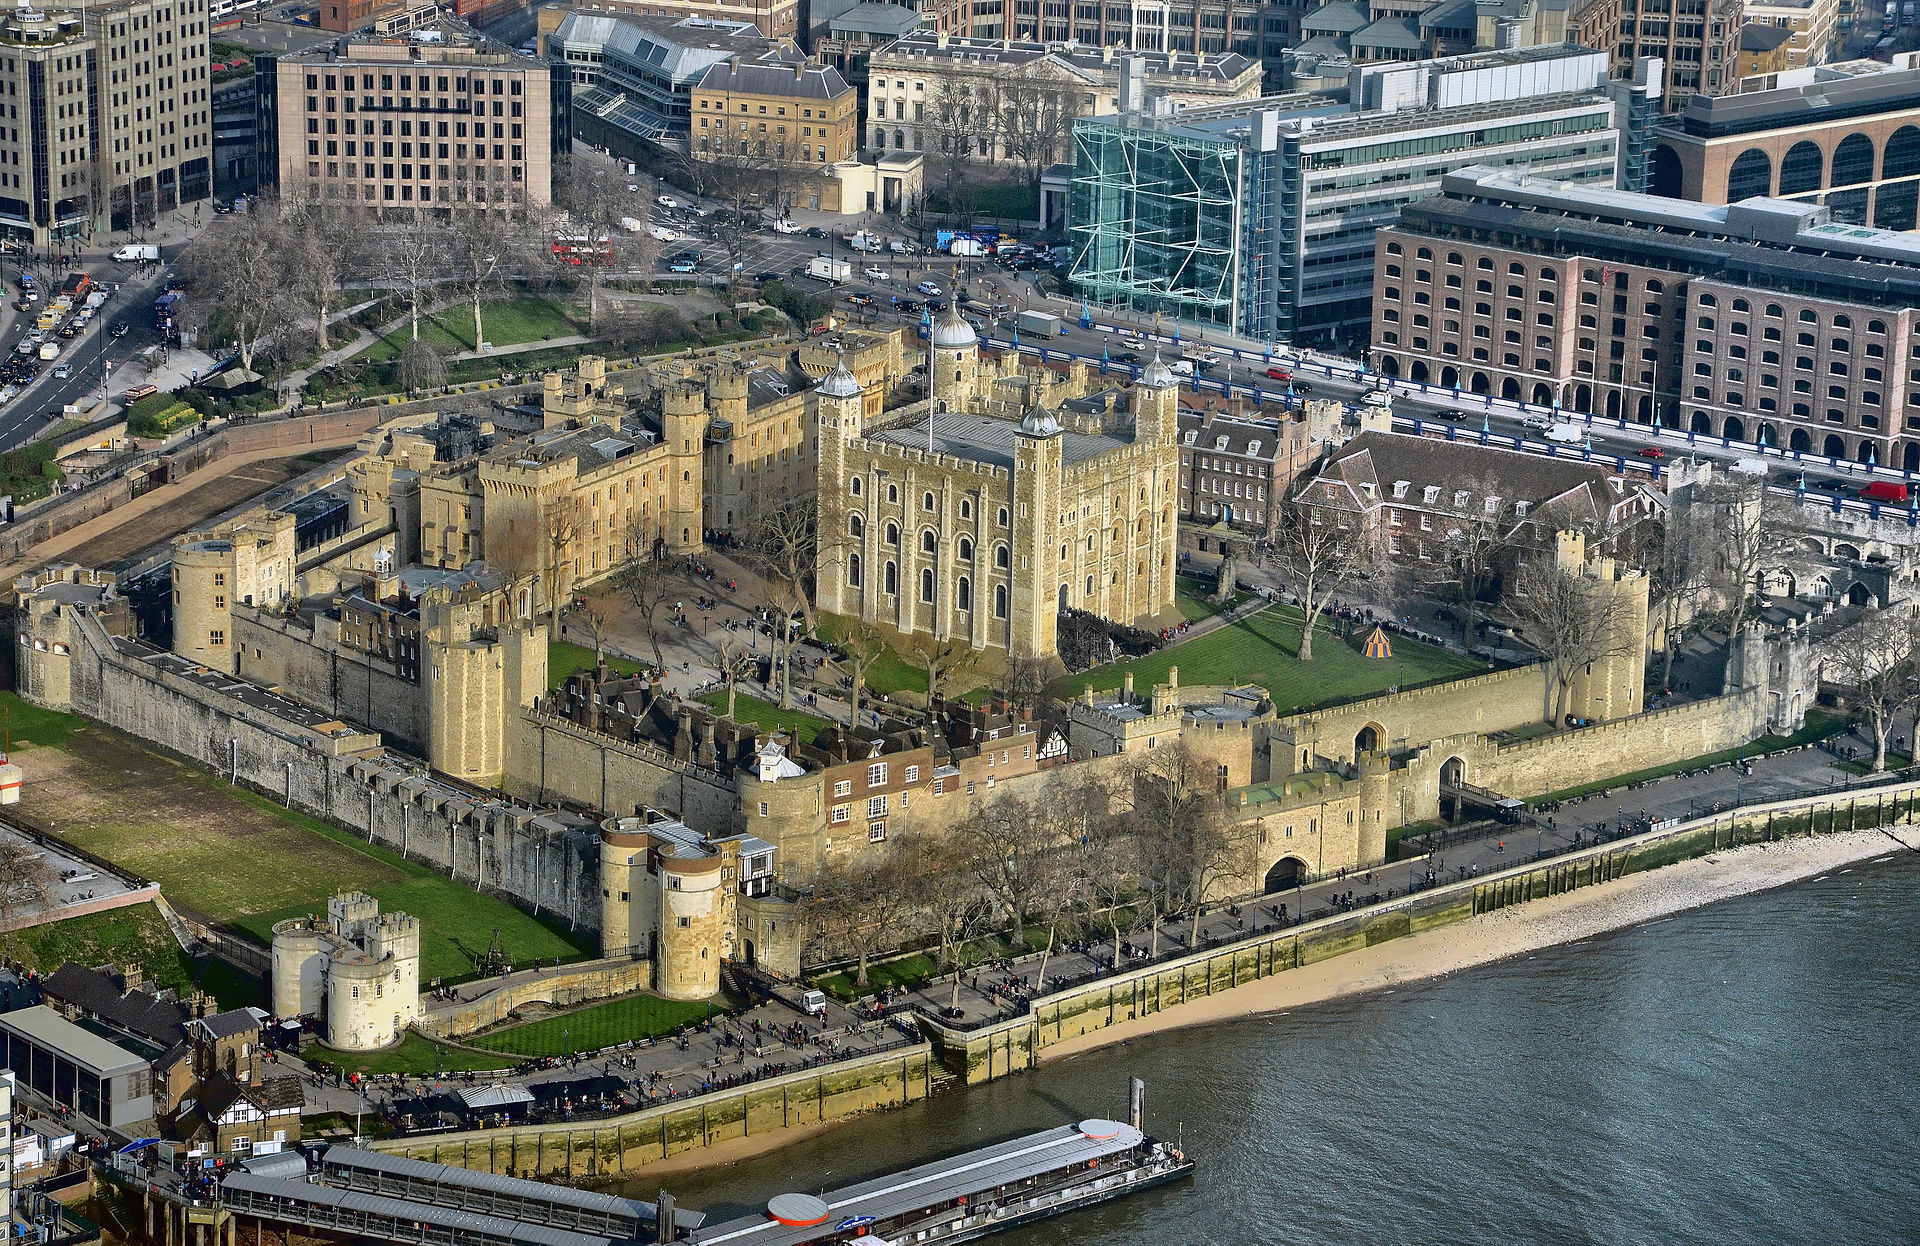 Tower of london aerial view.jpg